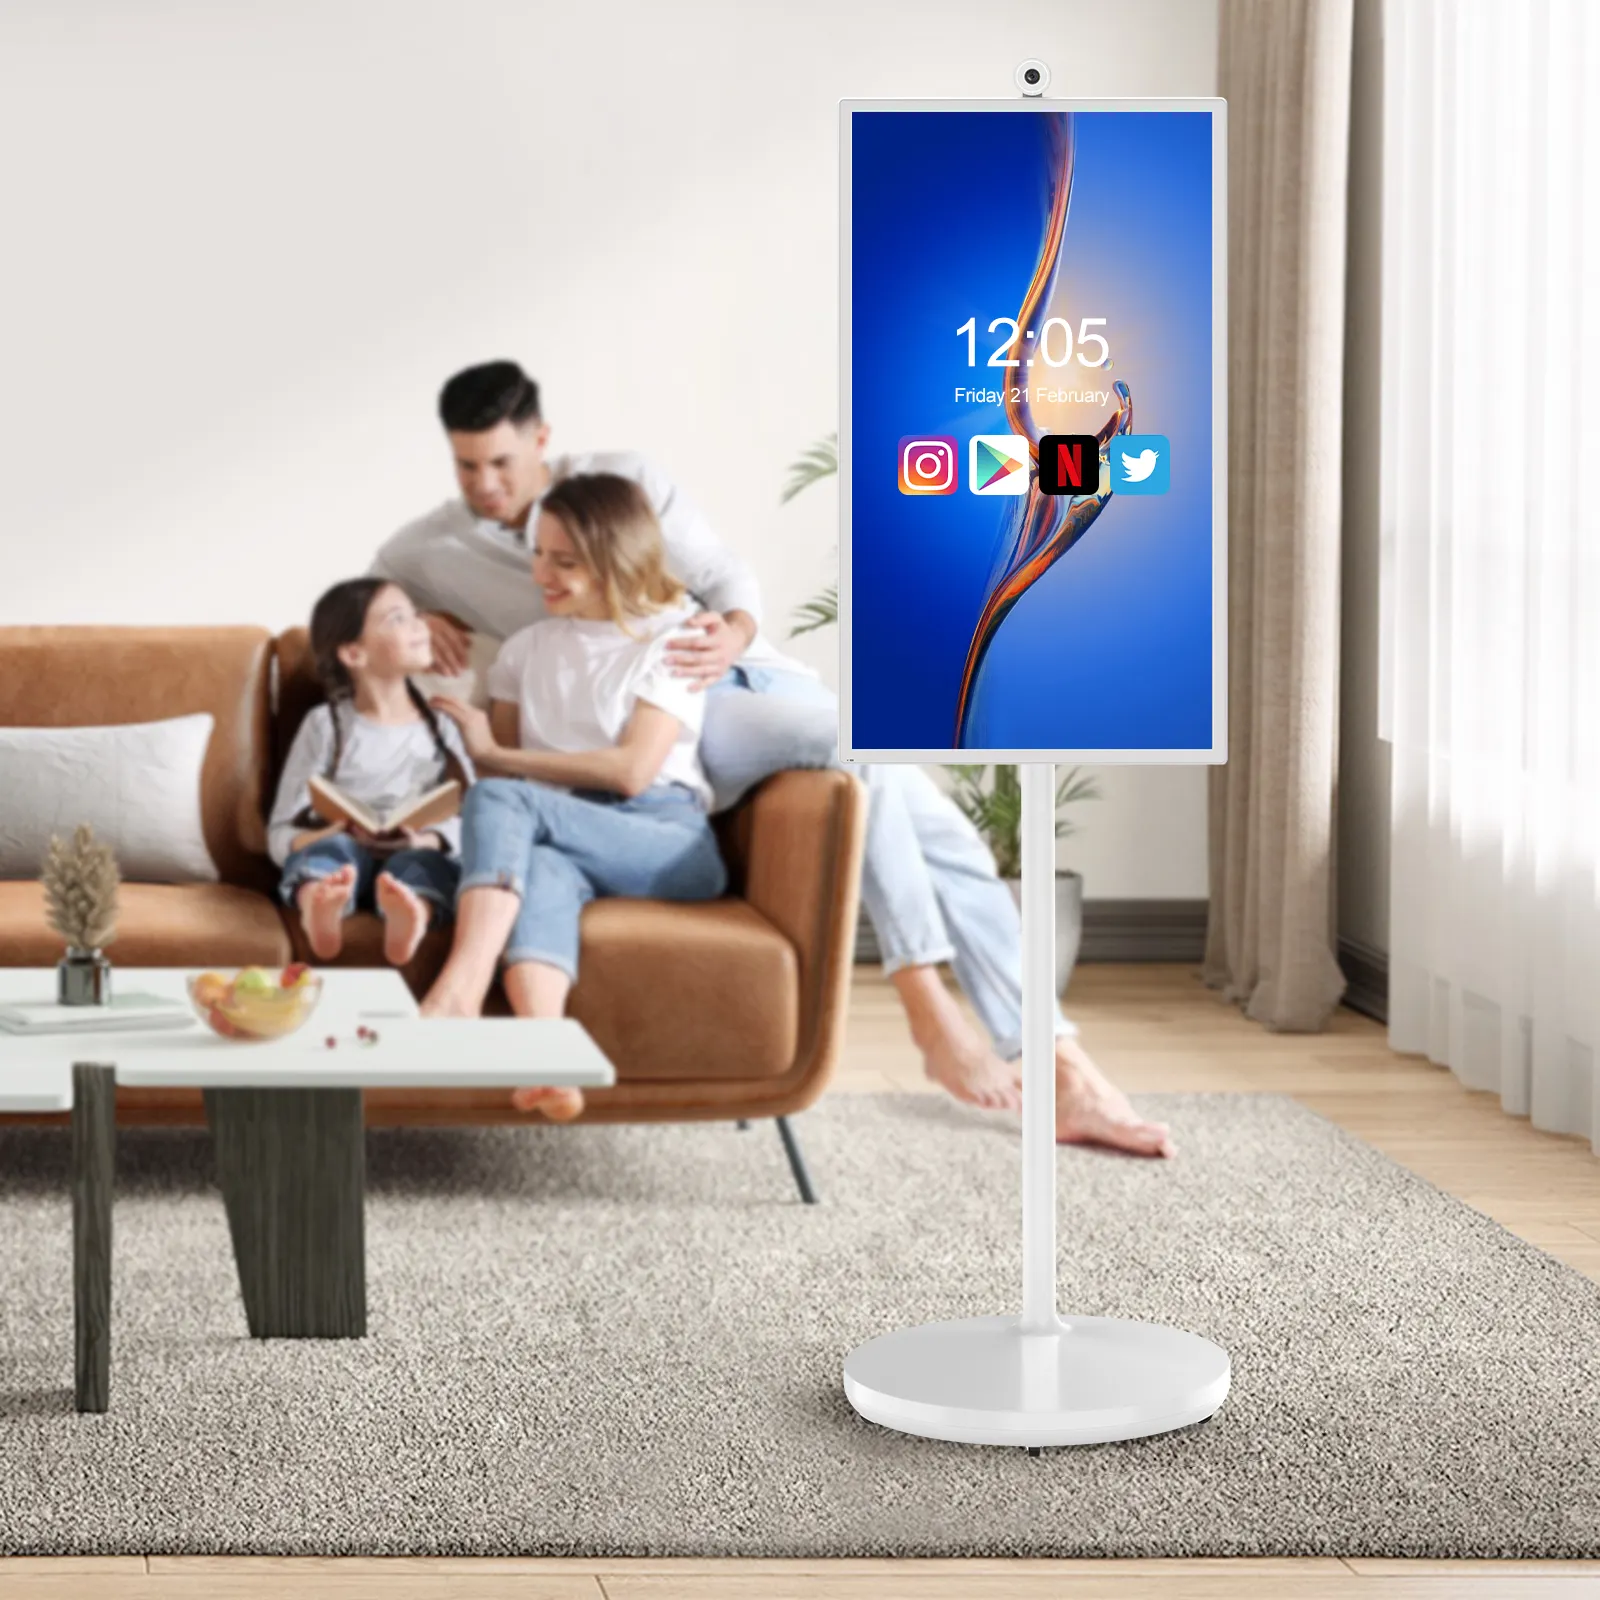 Ev iş oyun hareketli monitör görüntüler akıllı TV için 32 inç taşınabilir TV Lcd dokunmatik ekran bekleme bana